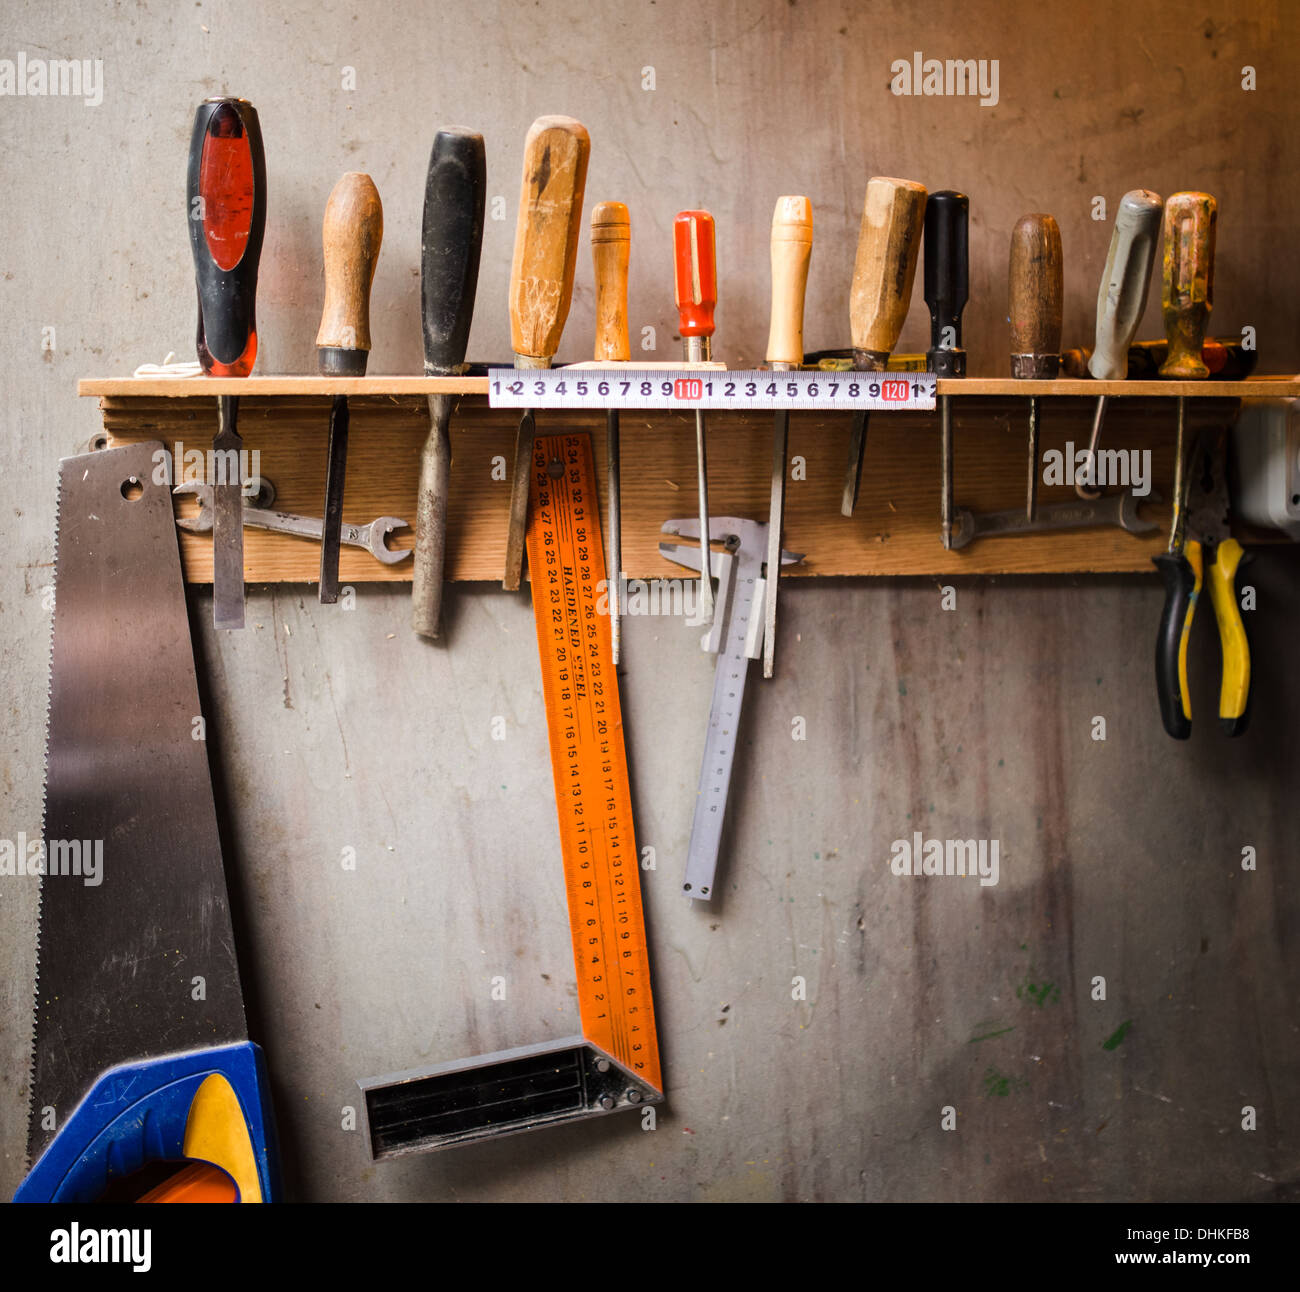 Assortiment d'outils accroché au mur Banque D'Images